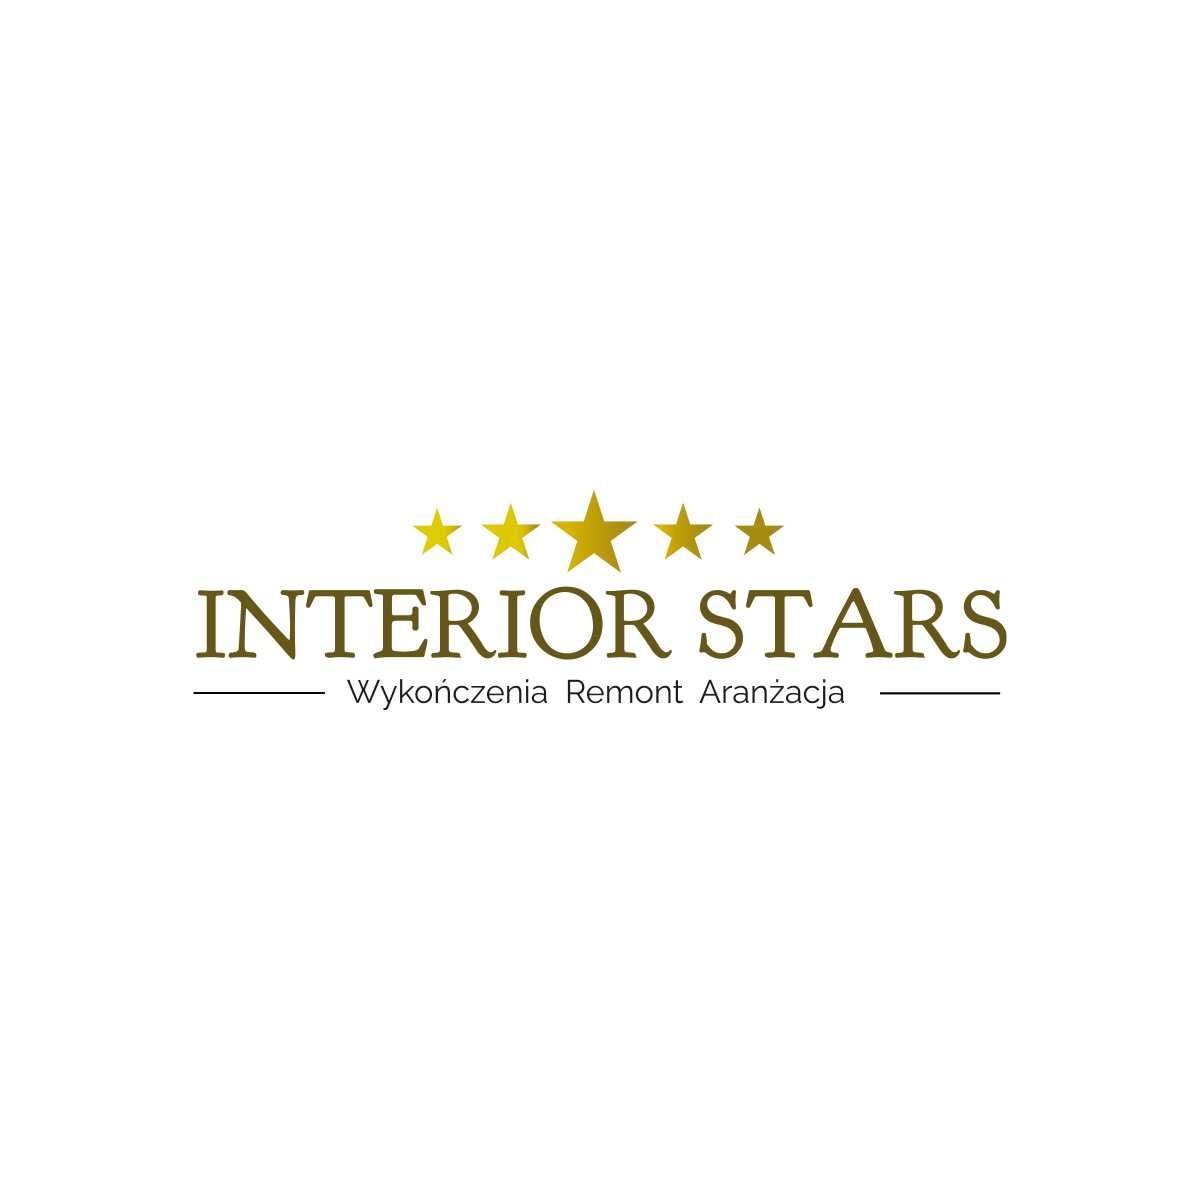 Interior Stars - Wykończenia Remont Aranżacja